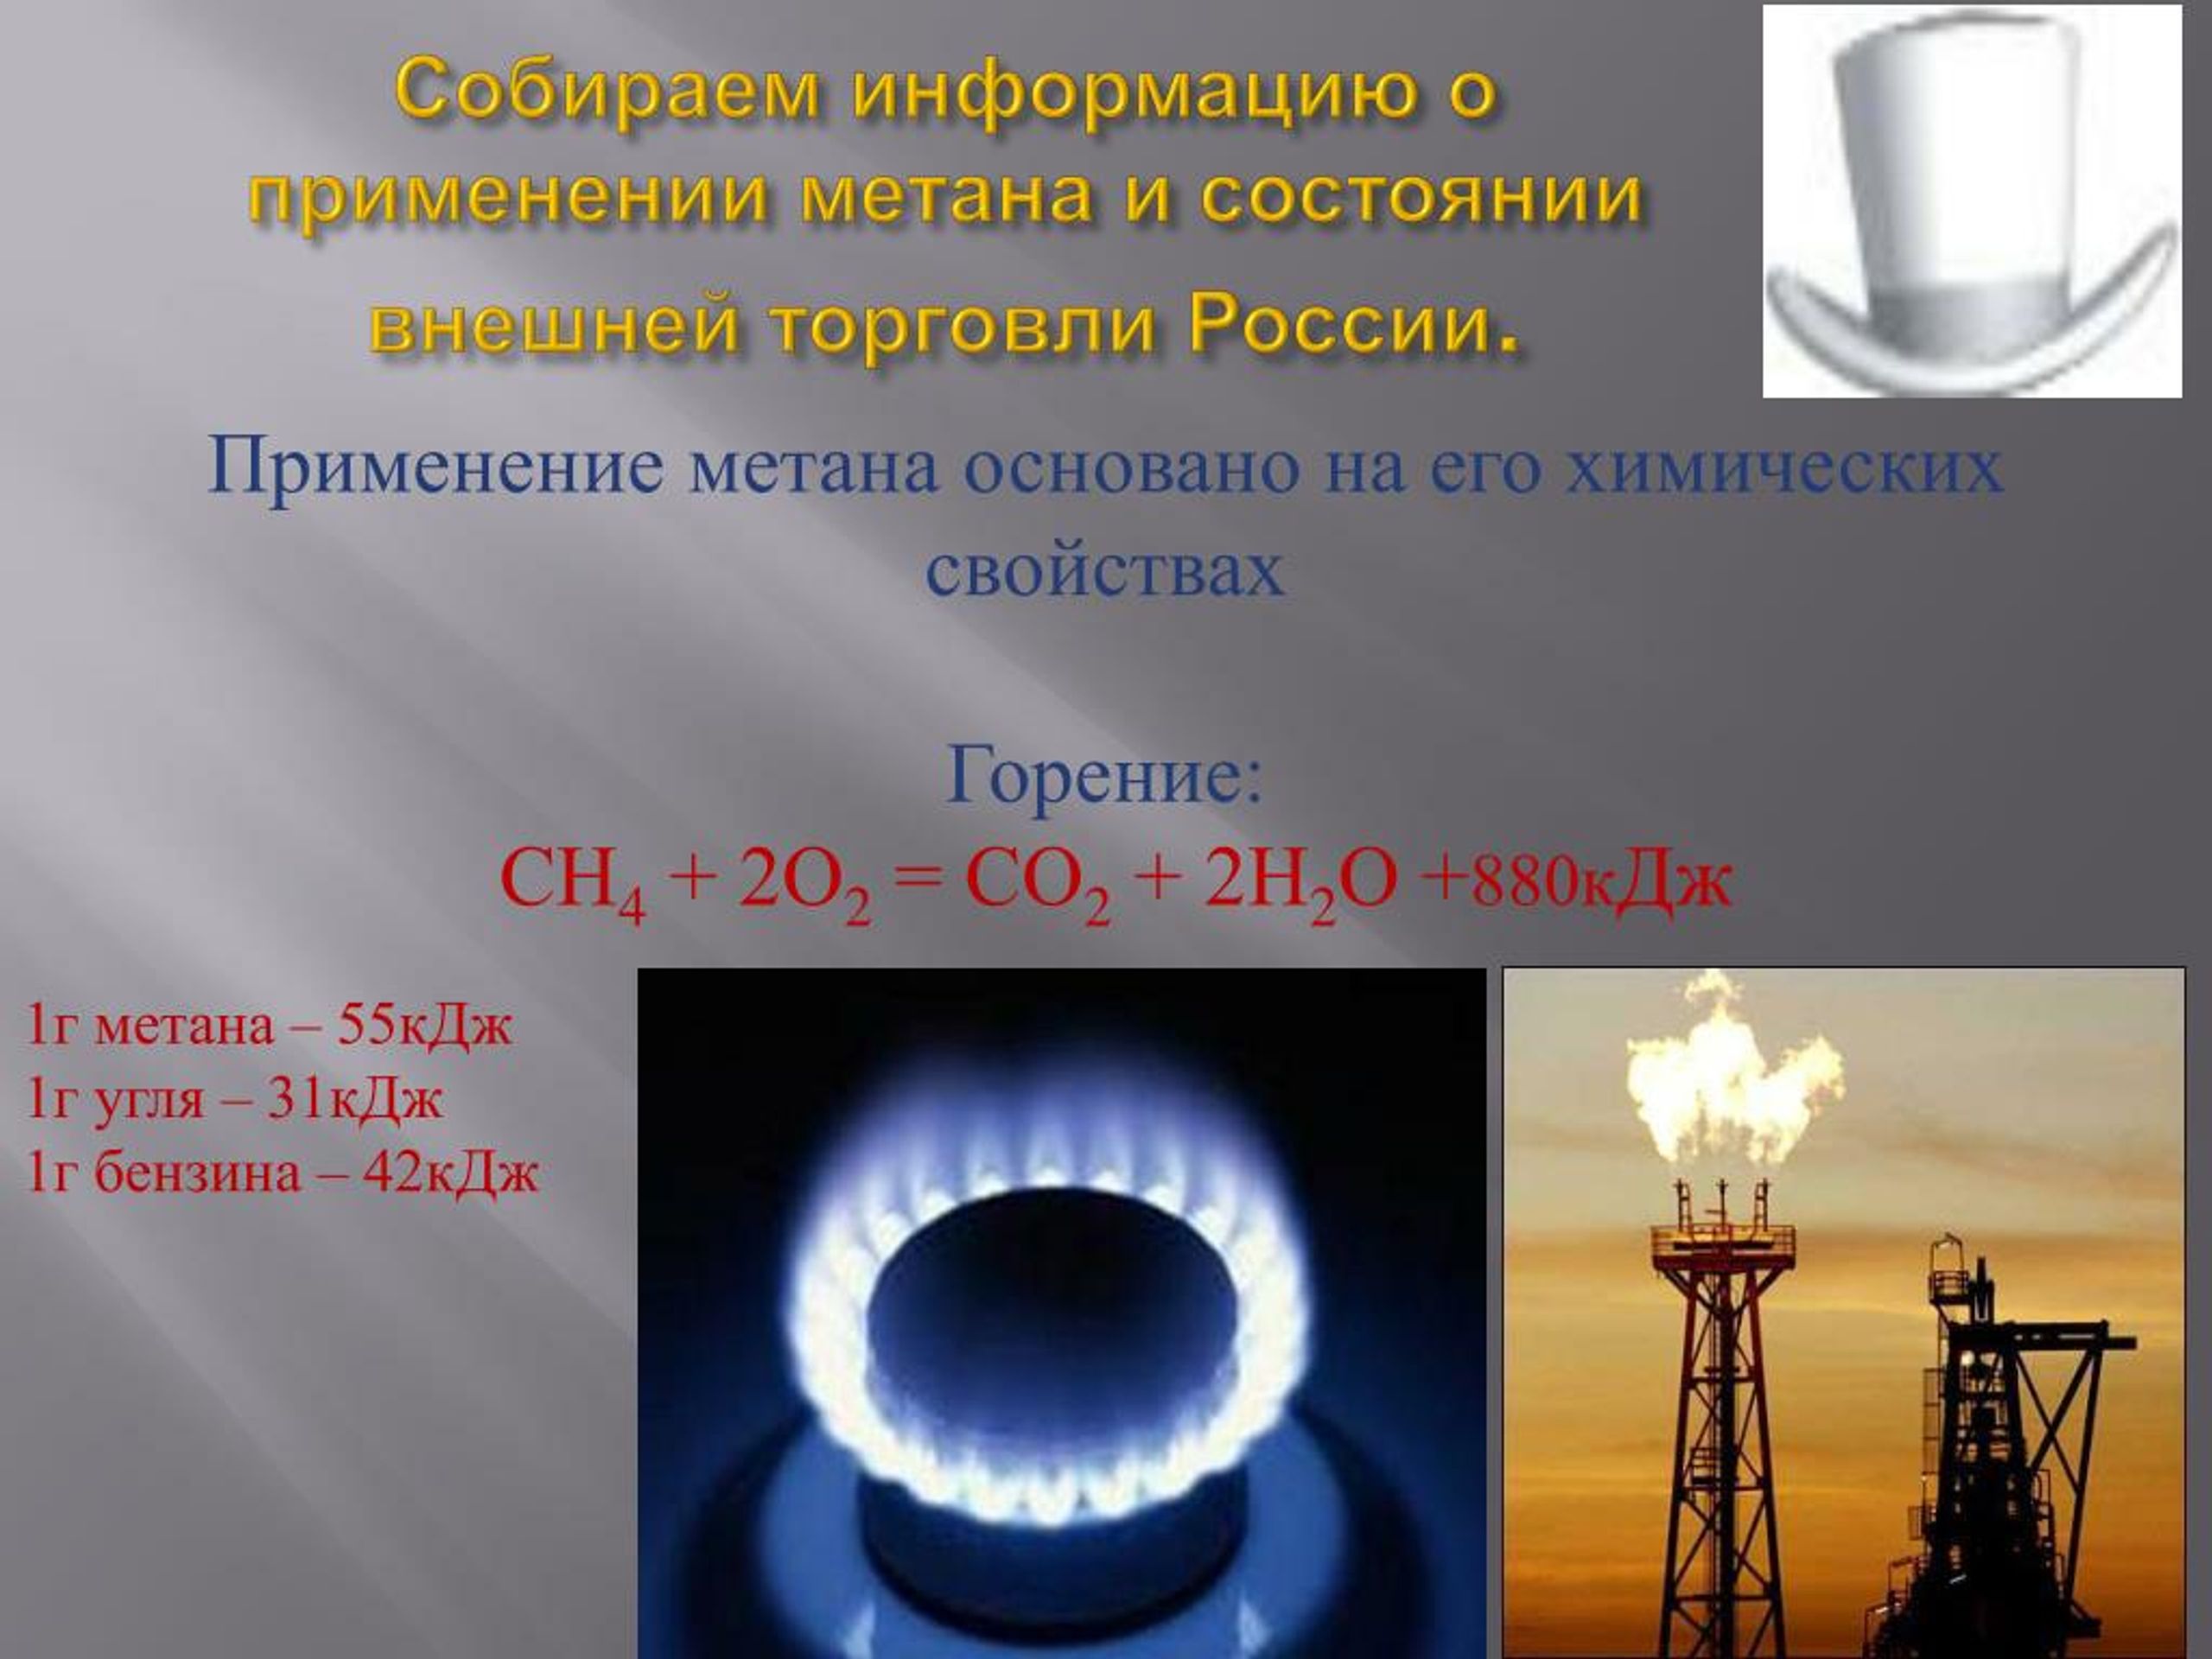 Продукты горения метана